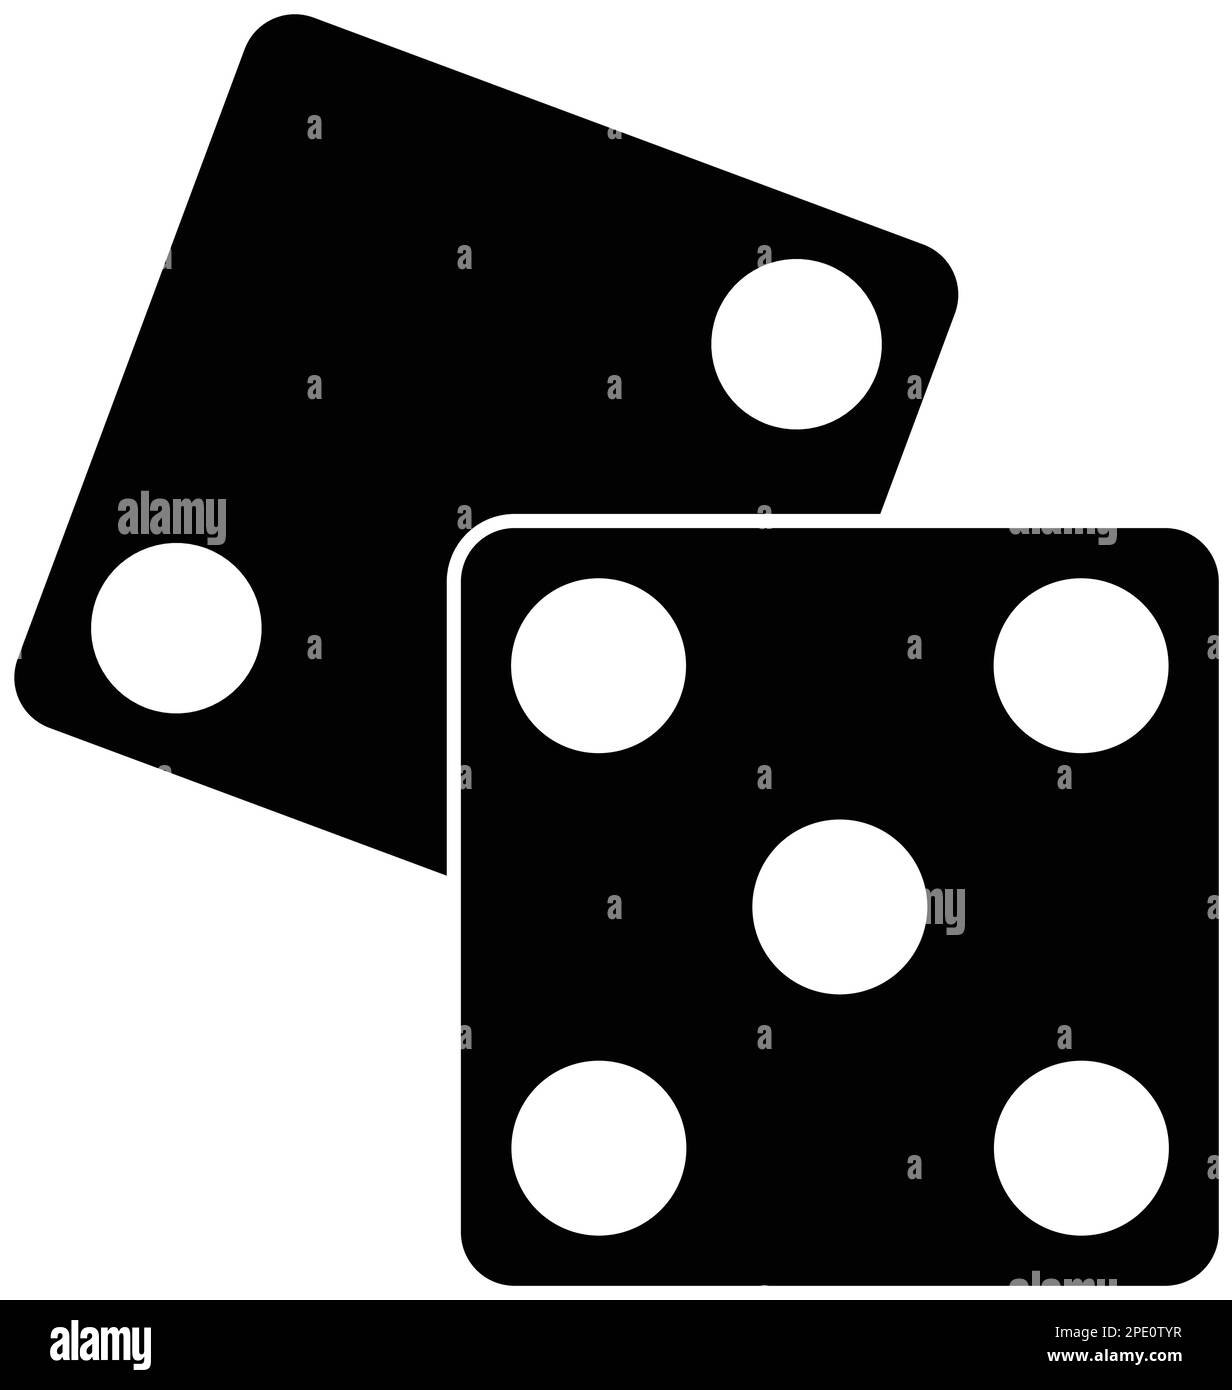 Flache schwarze Würfel-Ikone, trendiges Idea-Designkonzept mit sieben Glückszahlen, Spielobjekt im Casino isoliert auf weißem Hintergrund. Stock Vektor